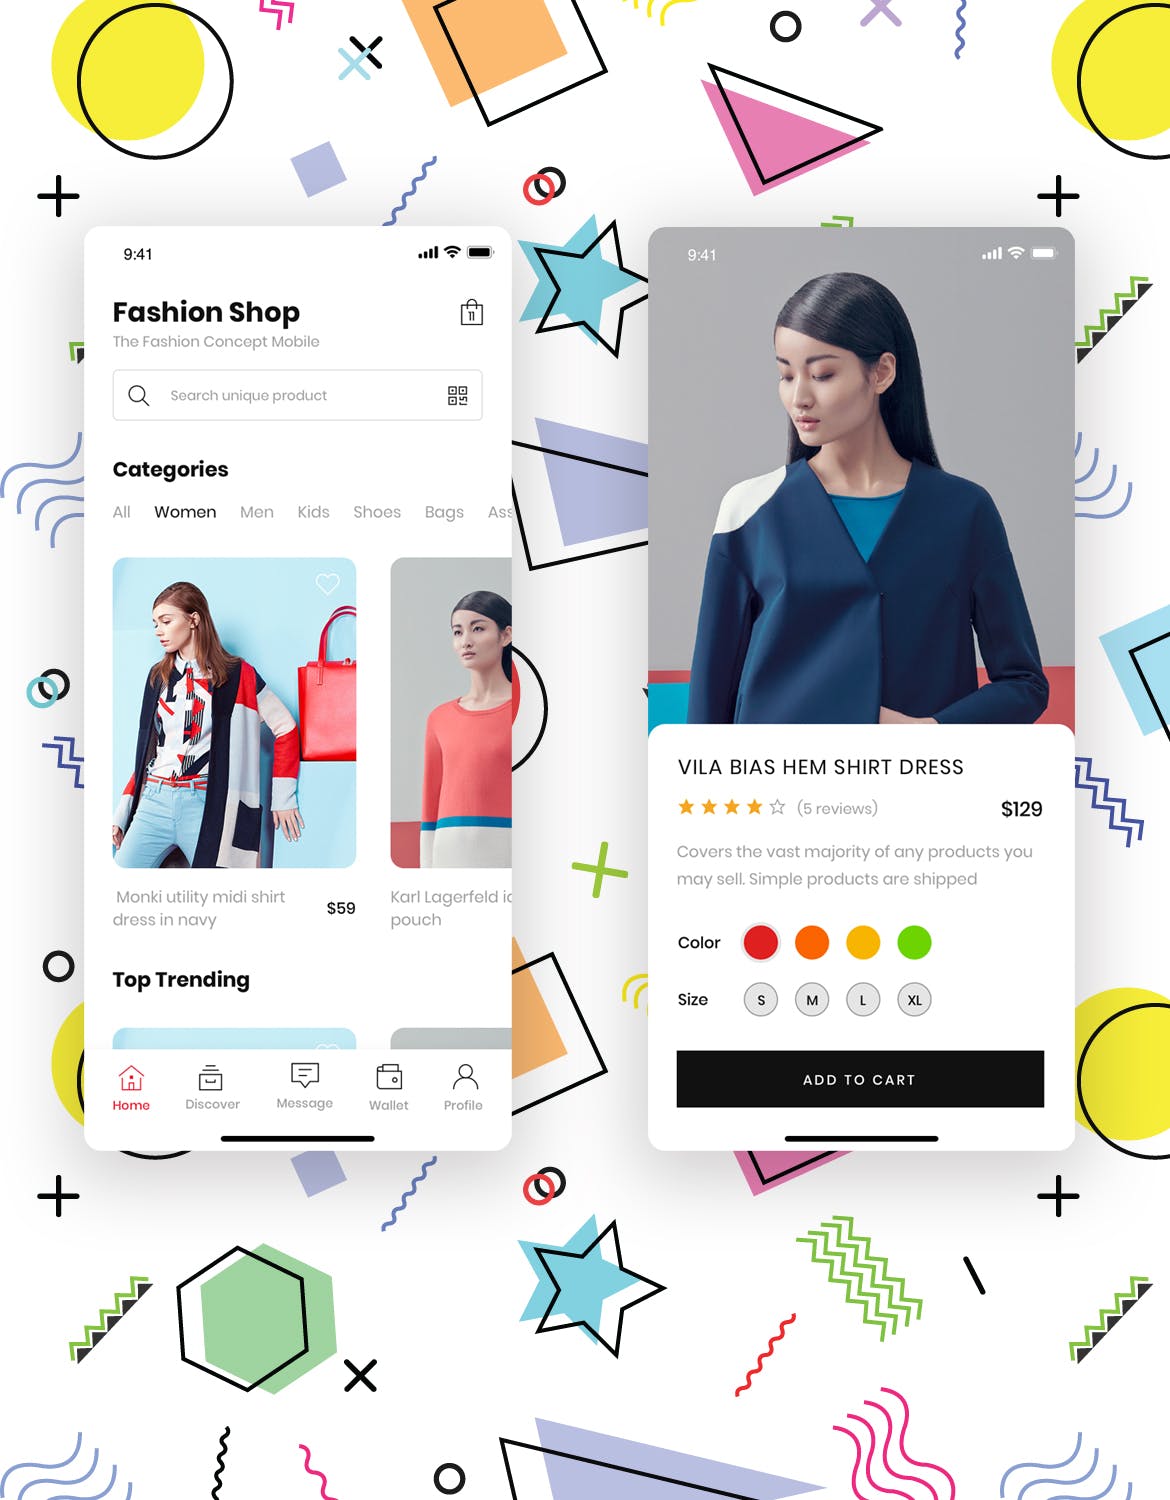 时尚服饰品牌网店APP应用UI设计素材中国精选套件 Fashion Store Mobile App UI Kit插图(1)